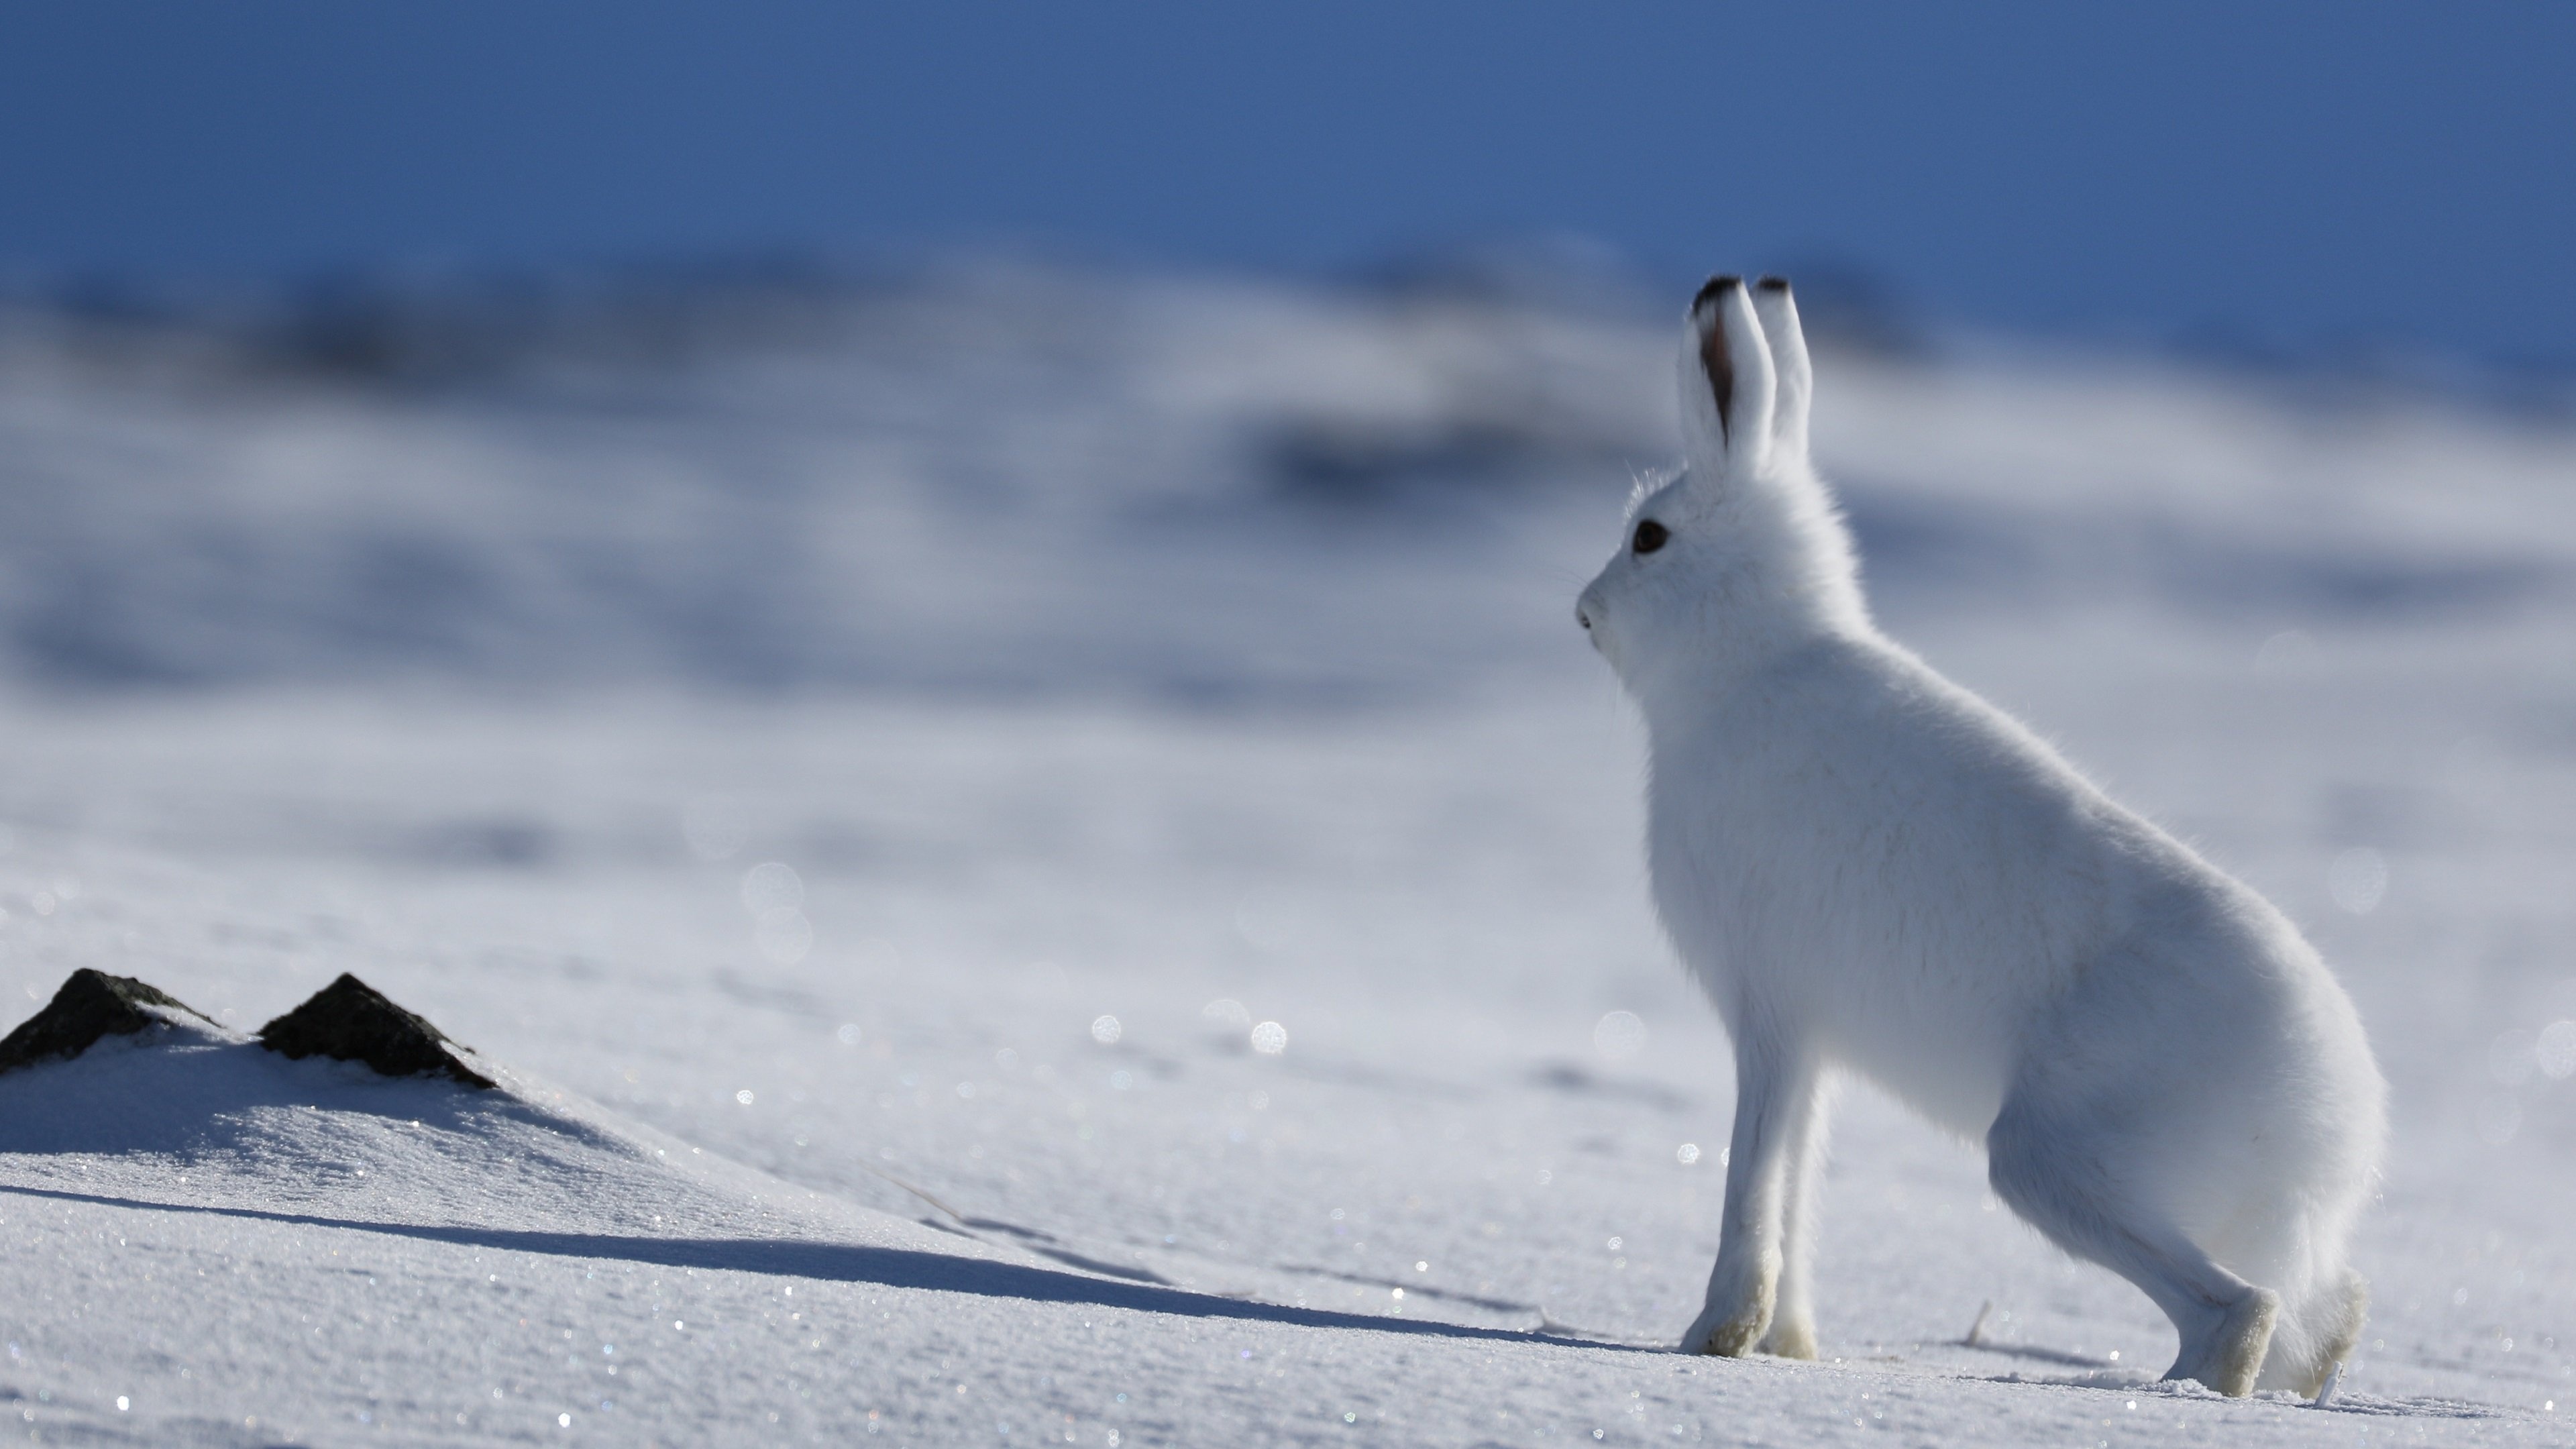 Arctic hare, HD wallpapers, Wildlife photography, Nature's wonders, 3840x2160 4K Desktop